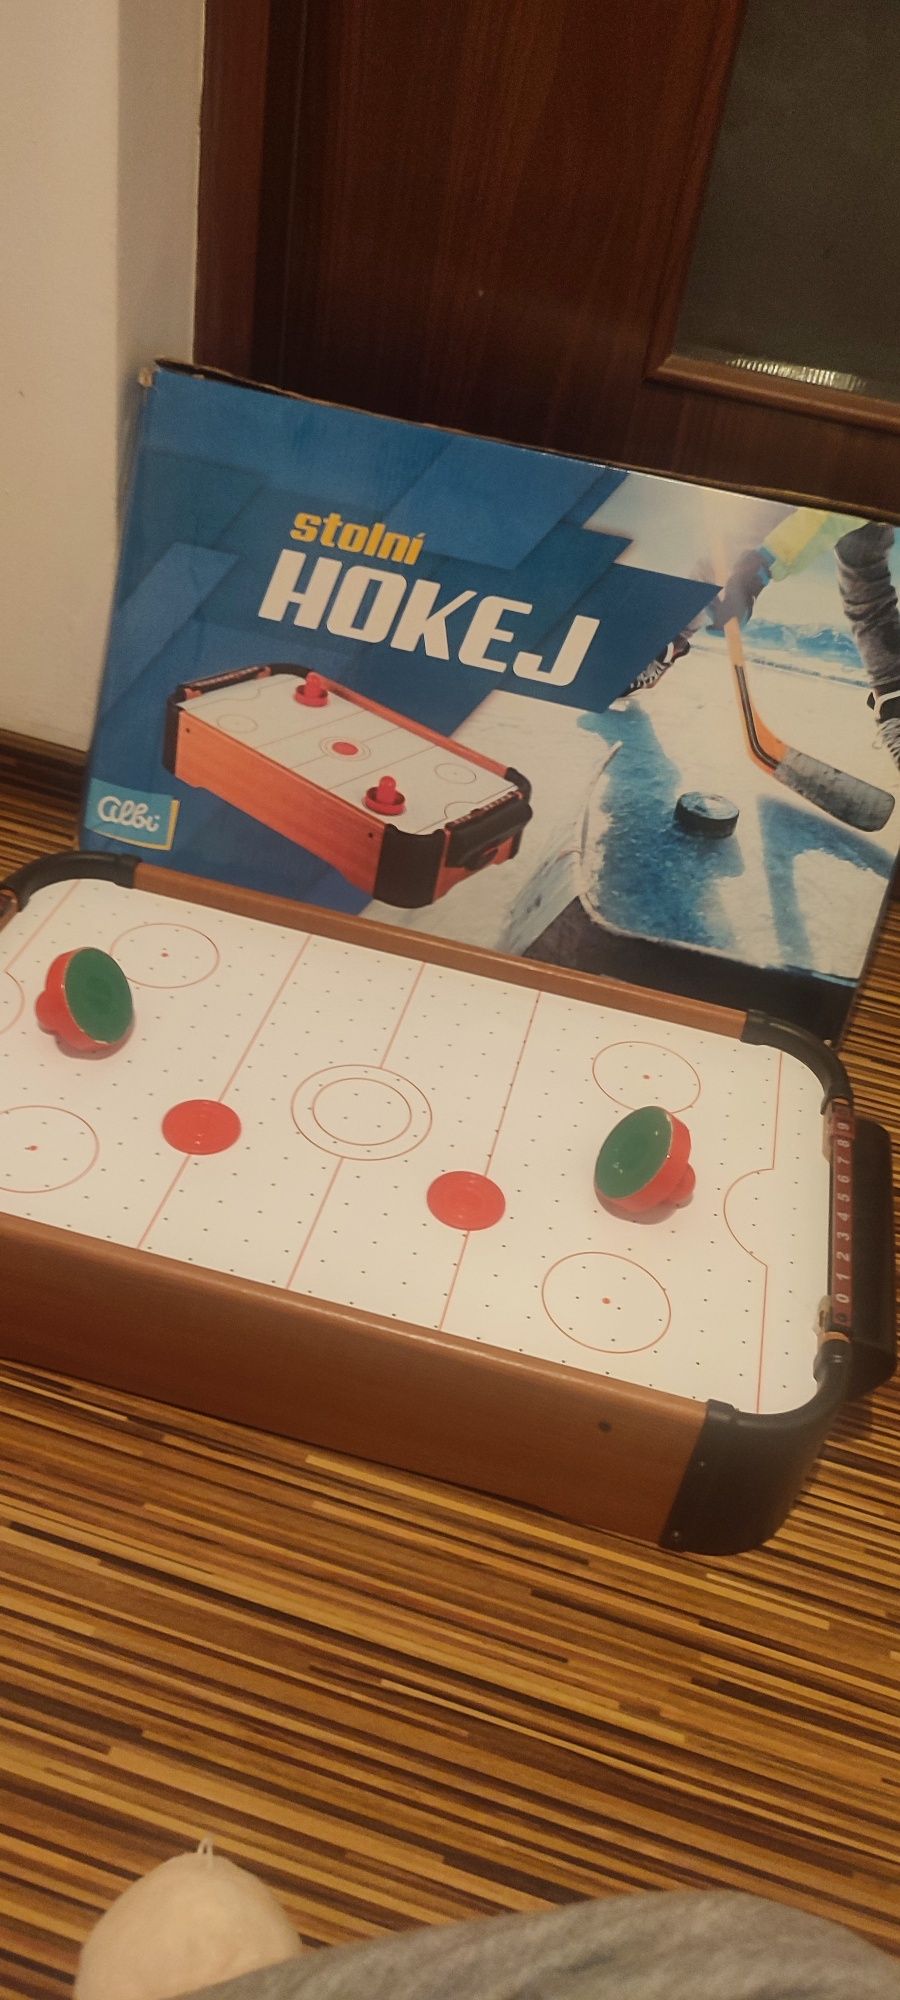 Hokej, bilard gry dla dzieci